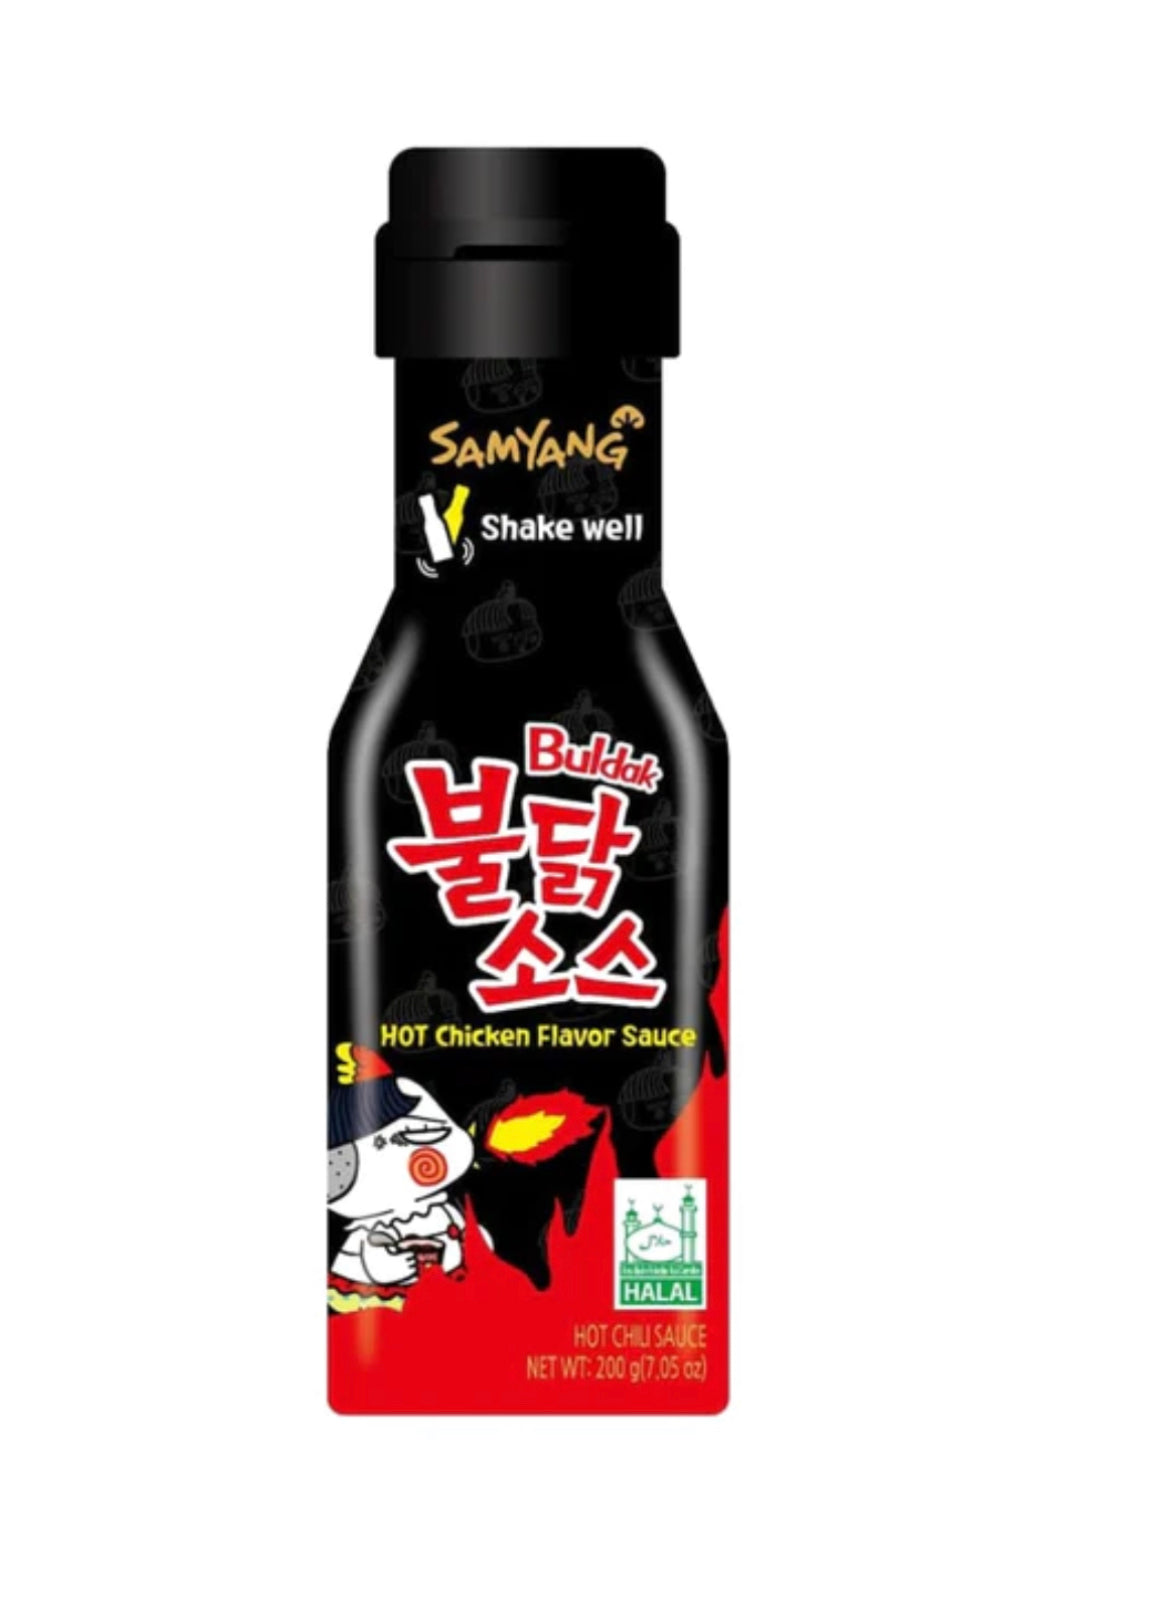 Hot Chicken Flavour Sauce Original, 200ml